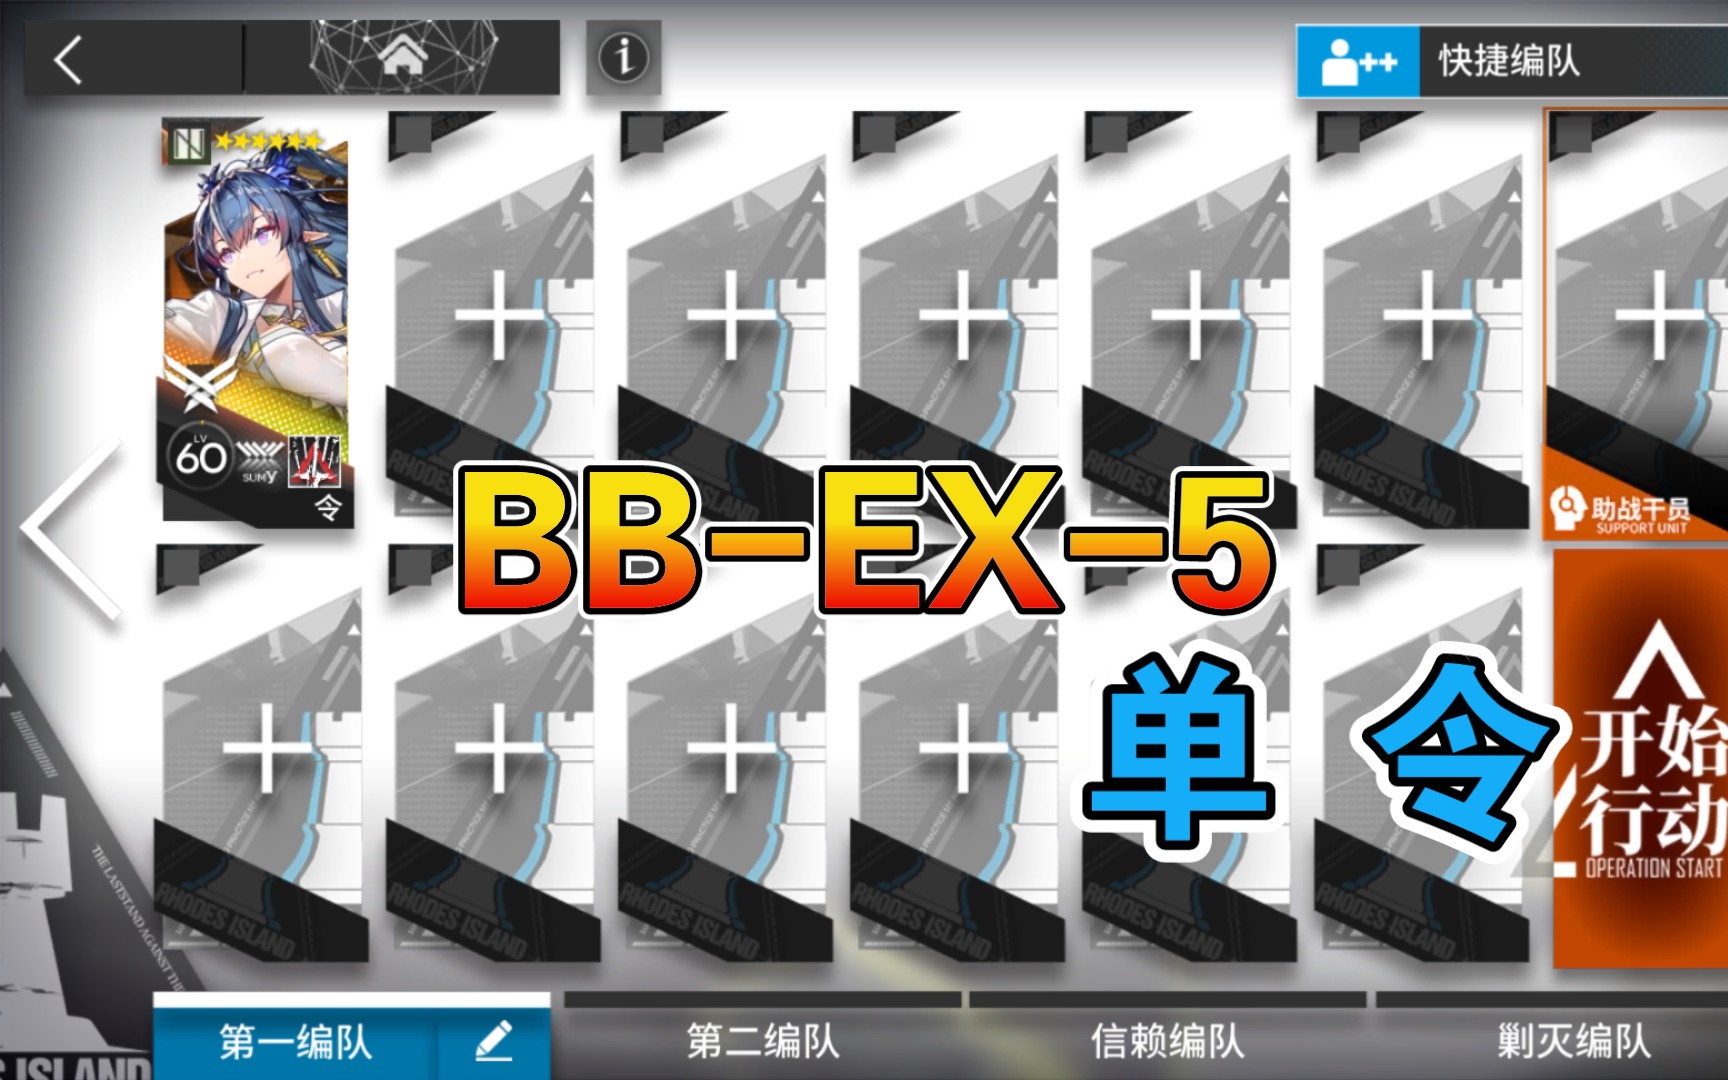 【明日方舟】 BB-EX-5 低配 令单人 巴别塔